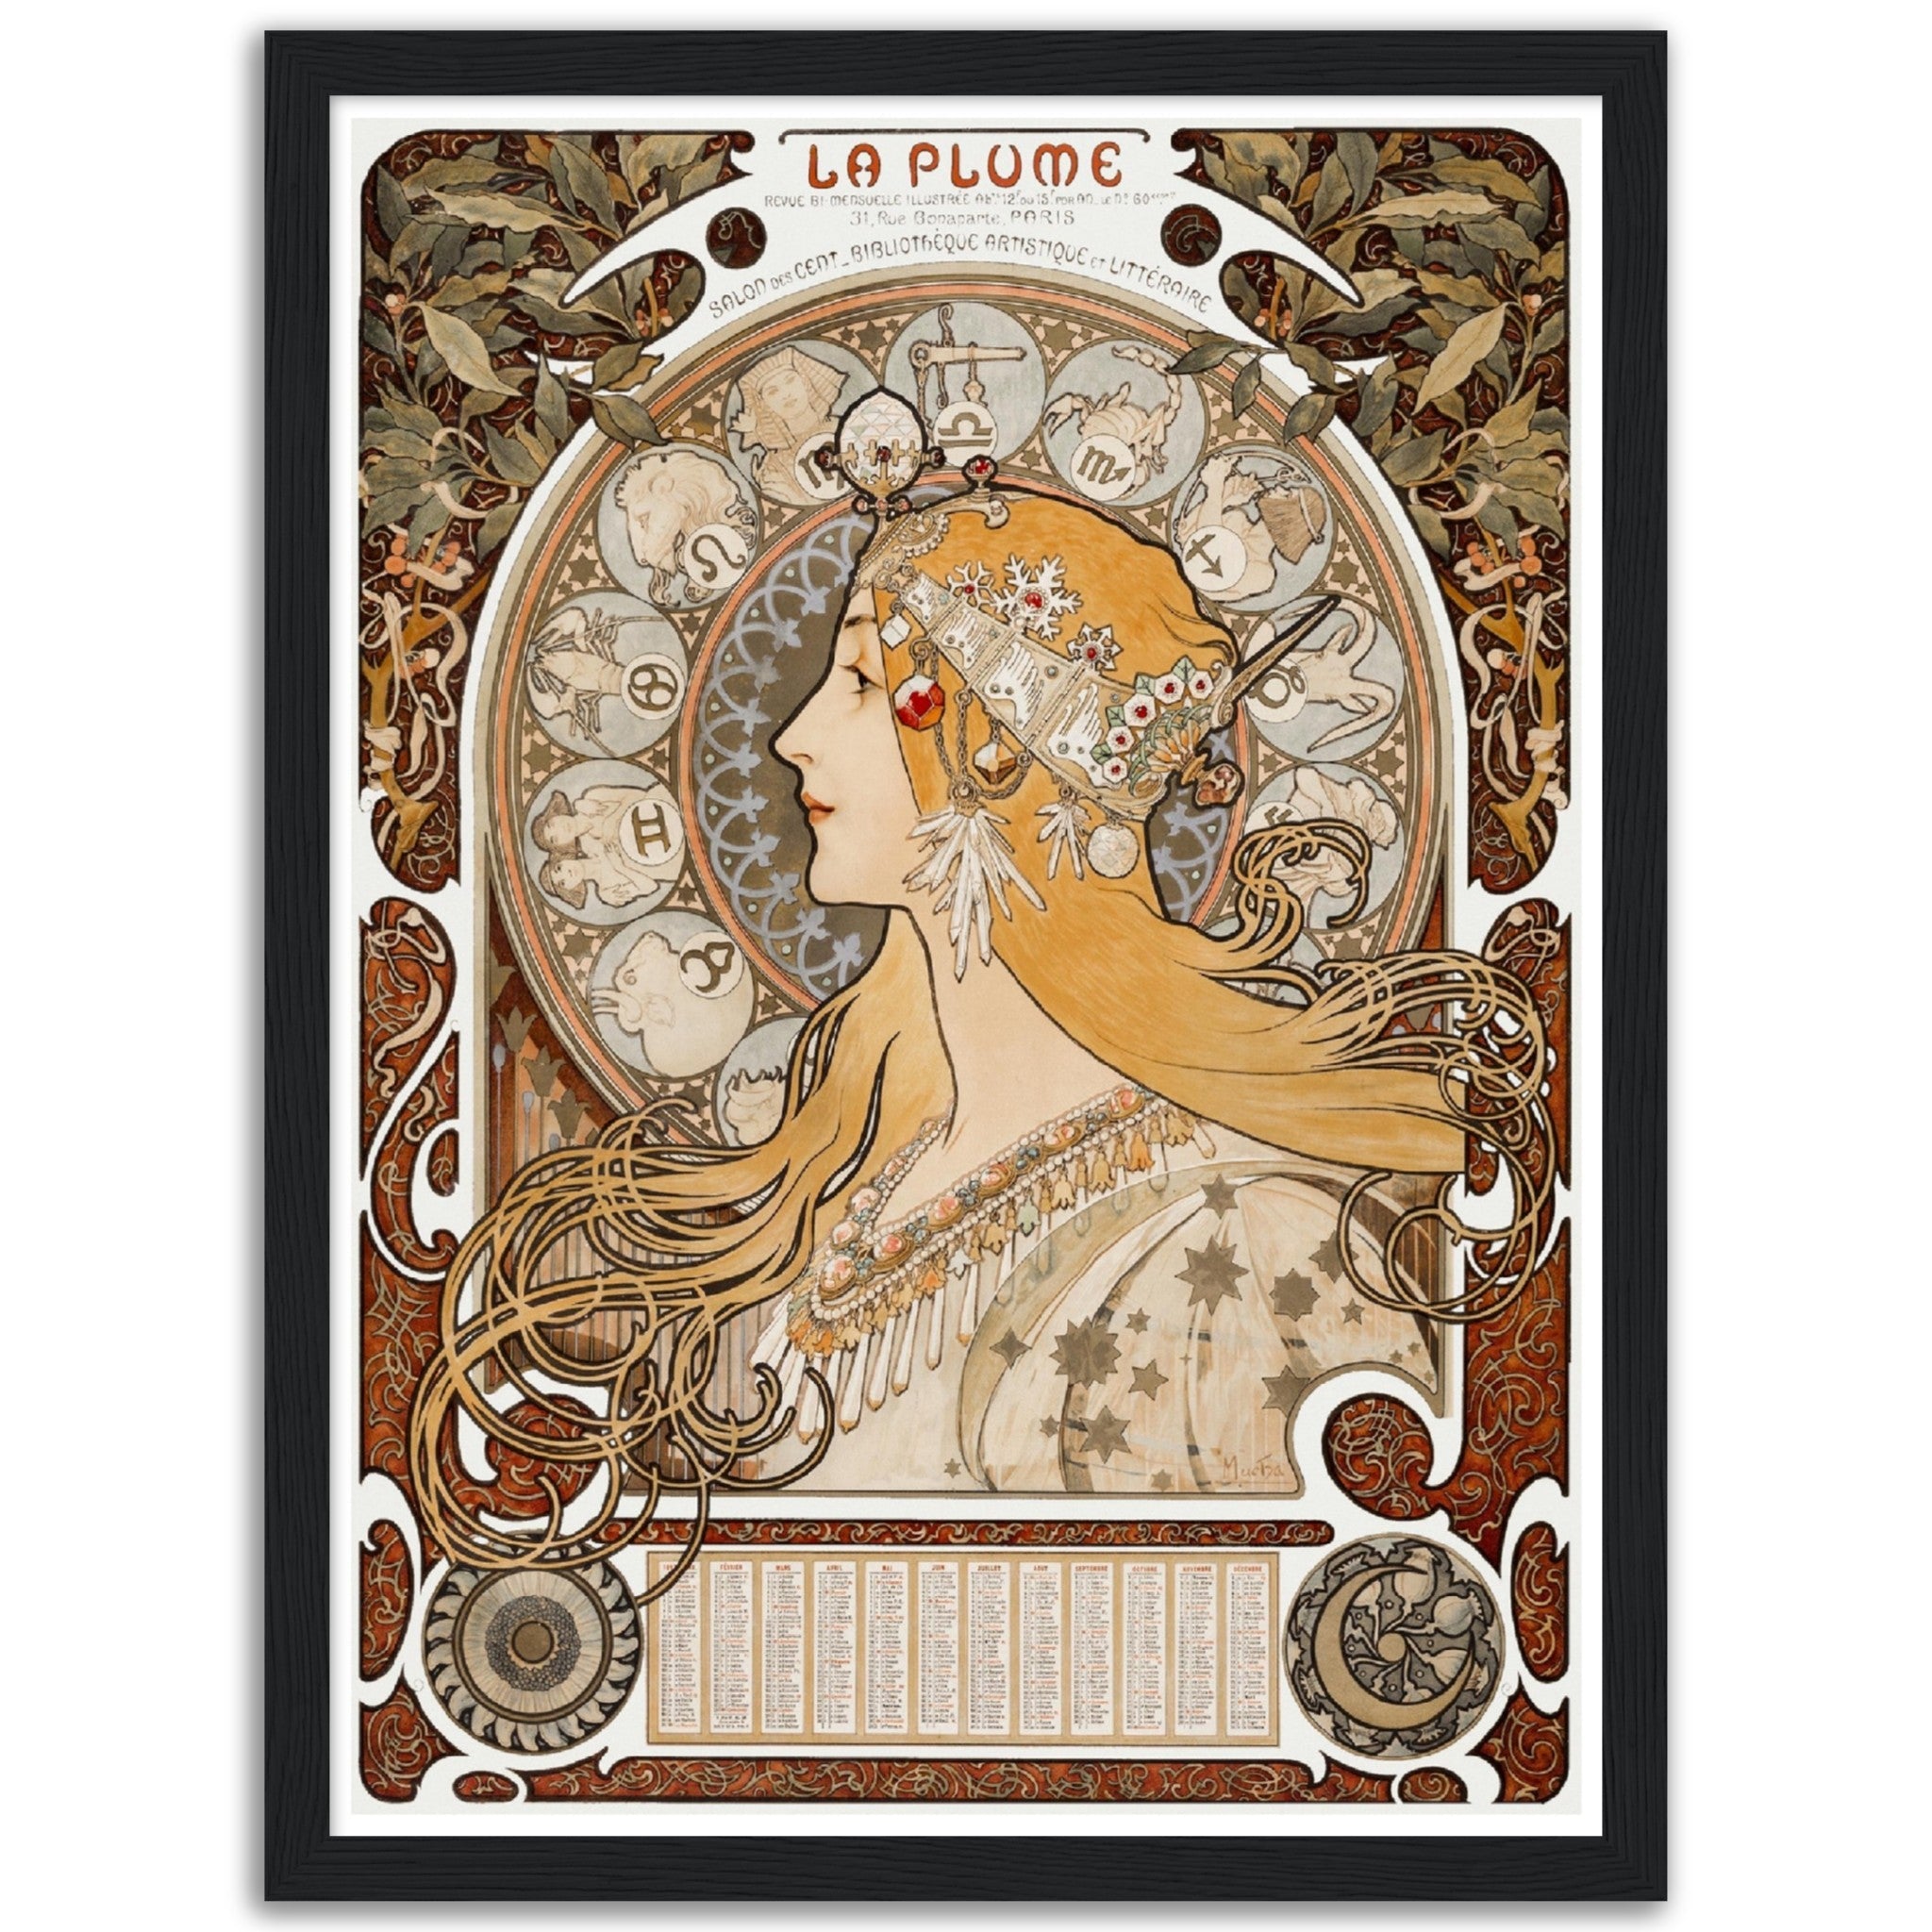 Zodiaque or La Plume (ca. 1896–1897) by Alphonse Mucha